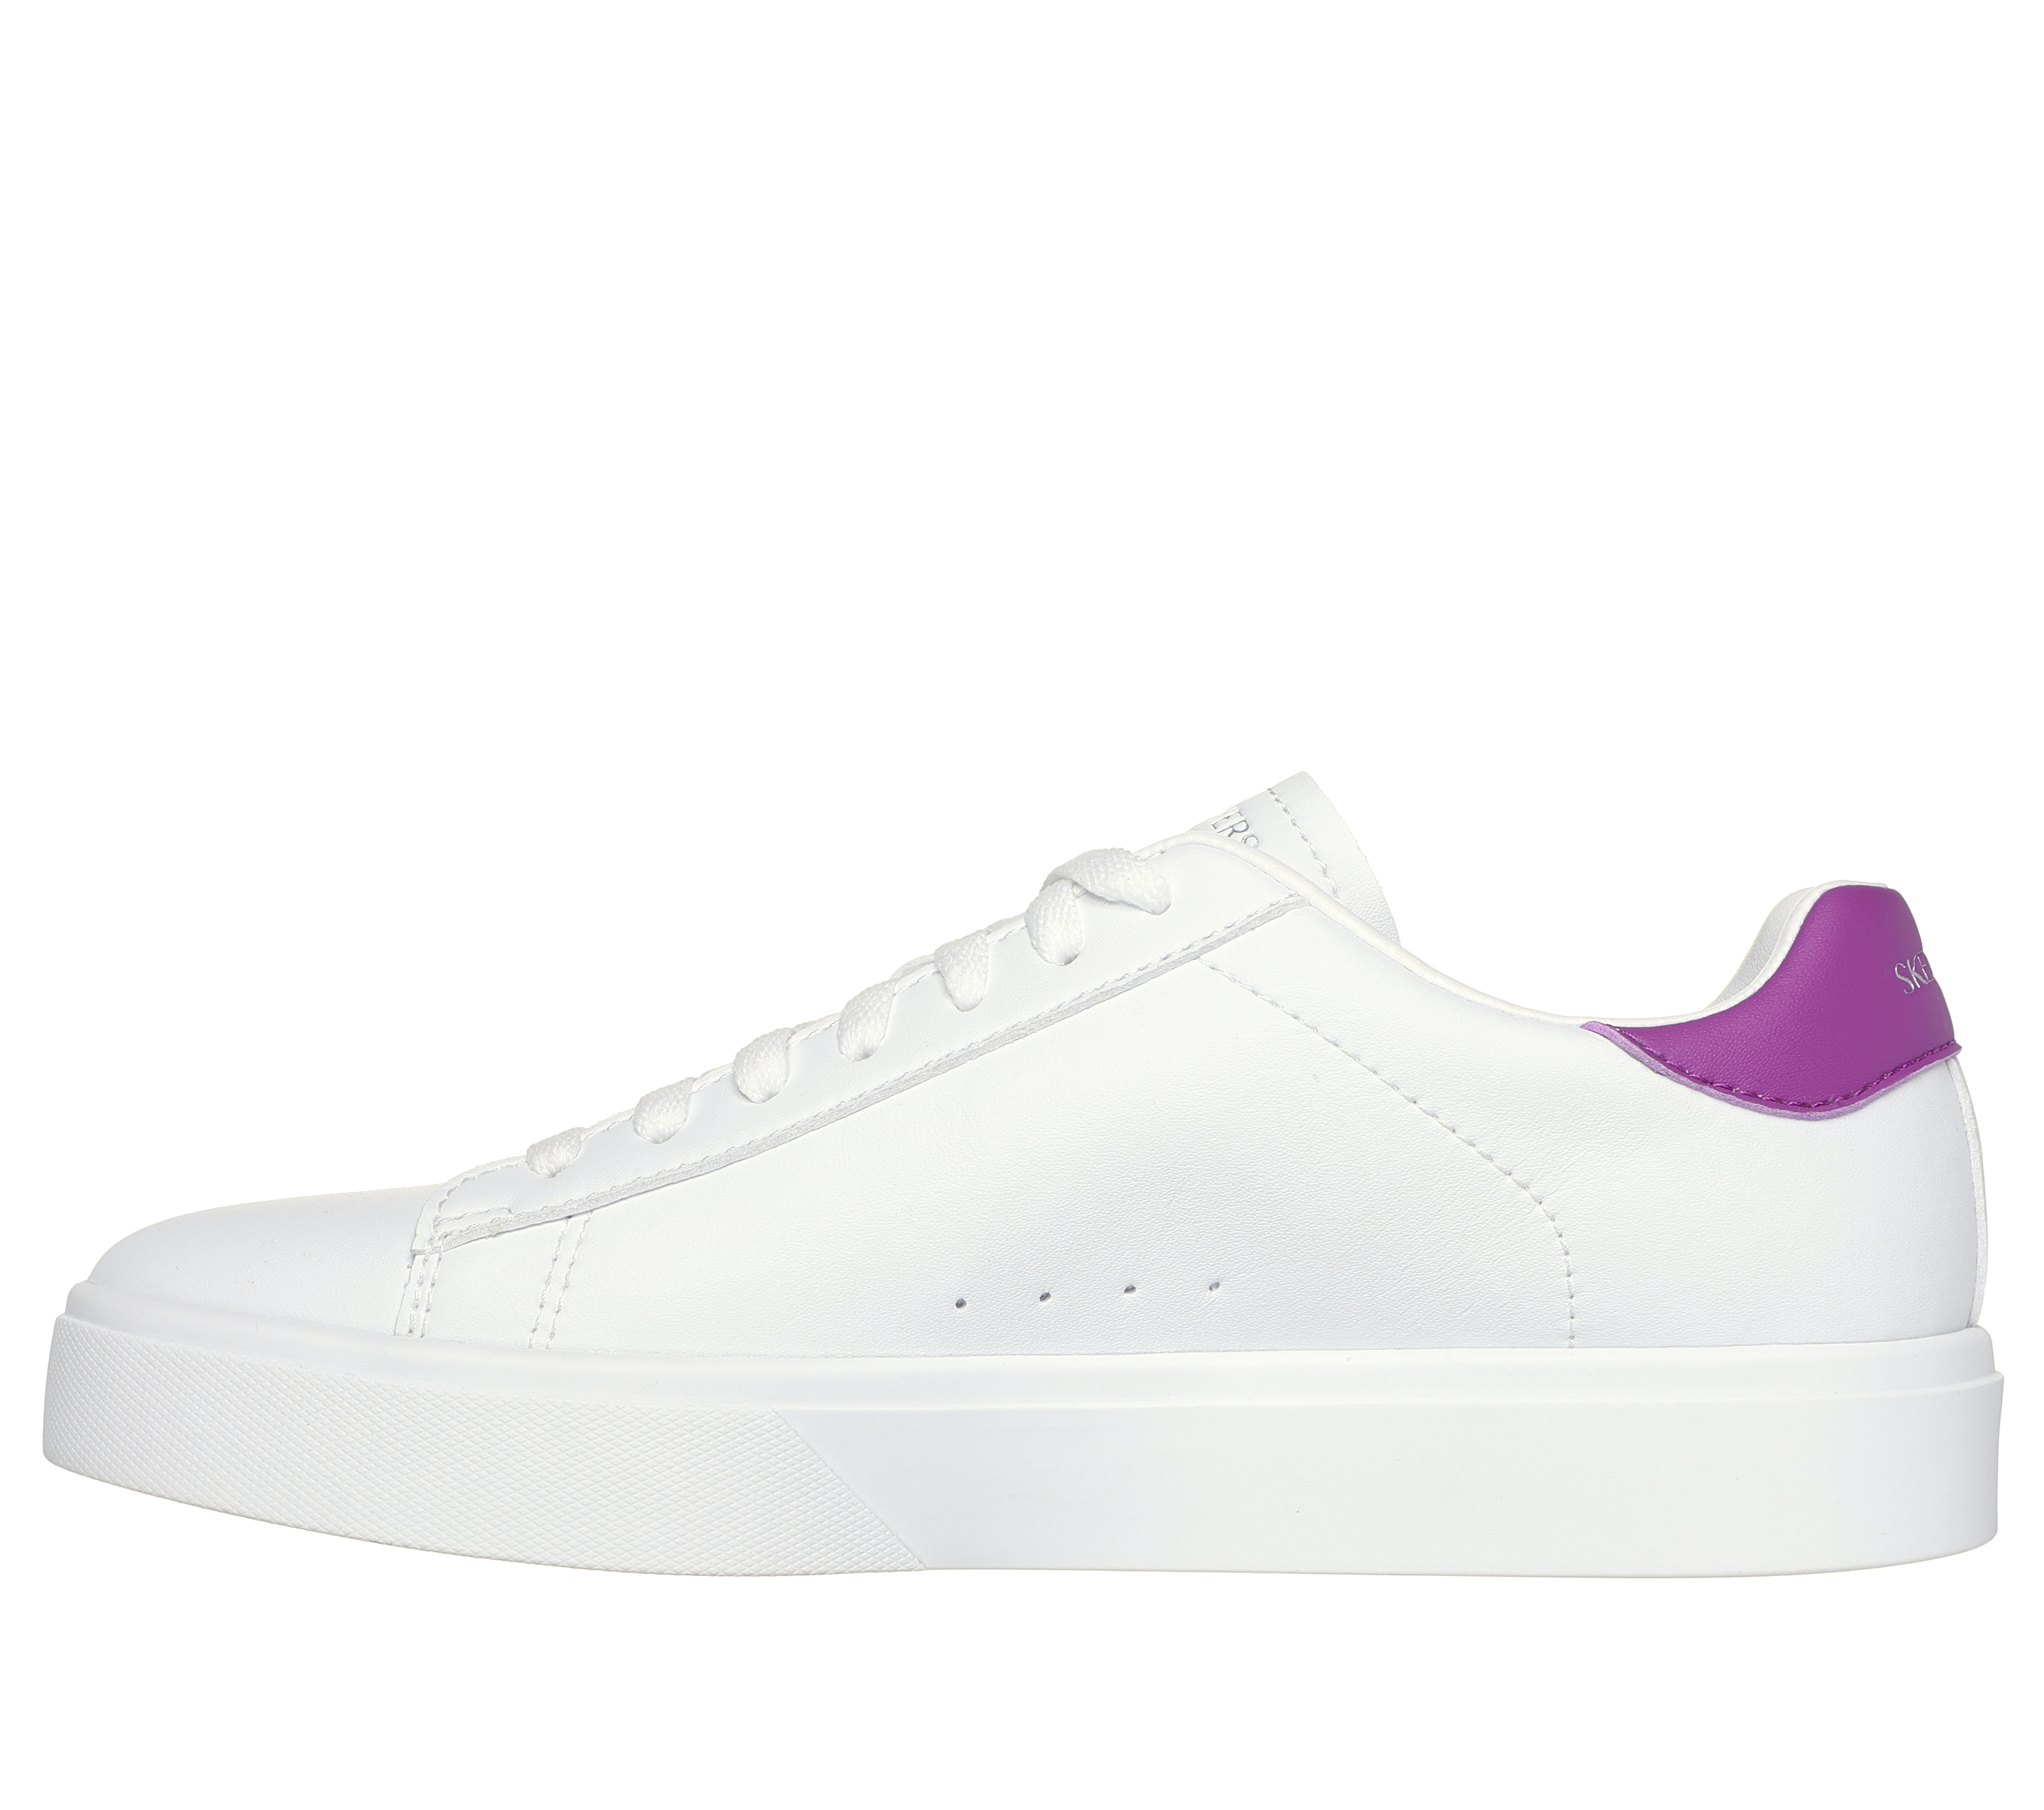 Skechers Eden LX - Top Grade 185000 White – Frames Footwear